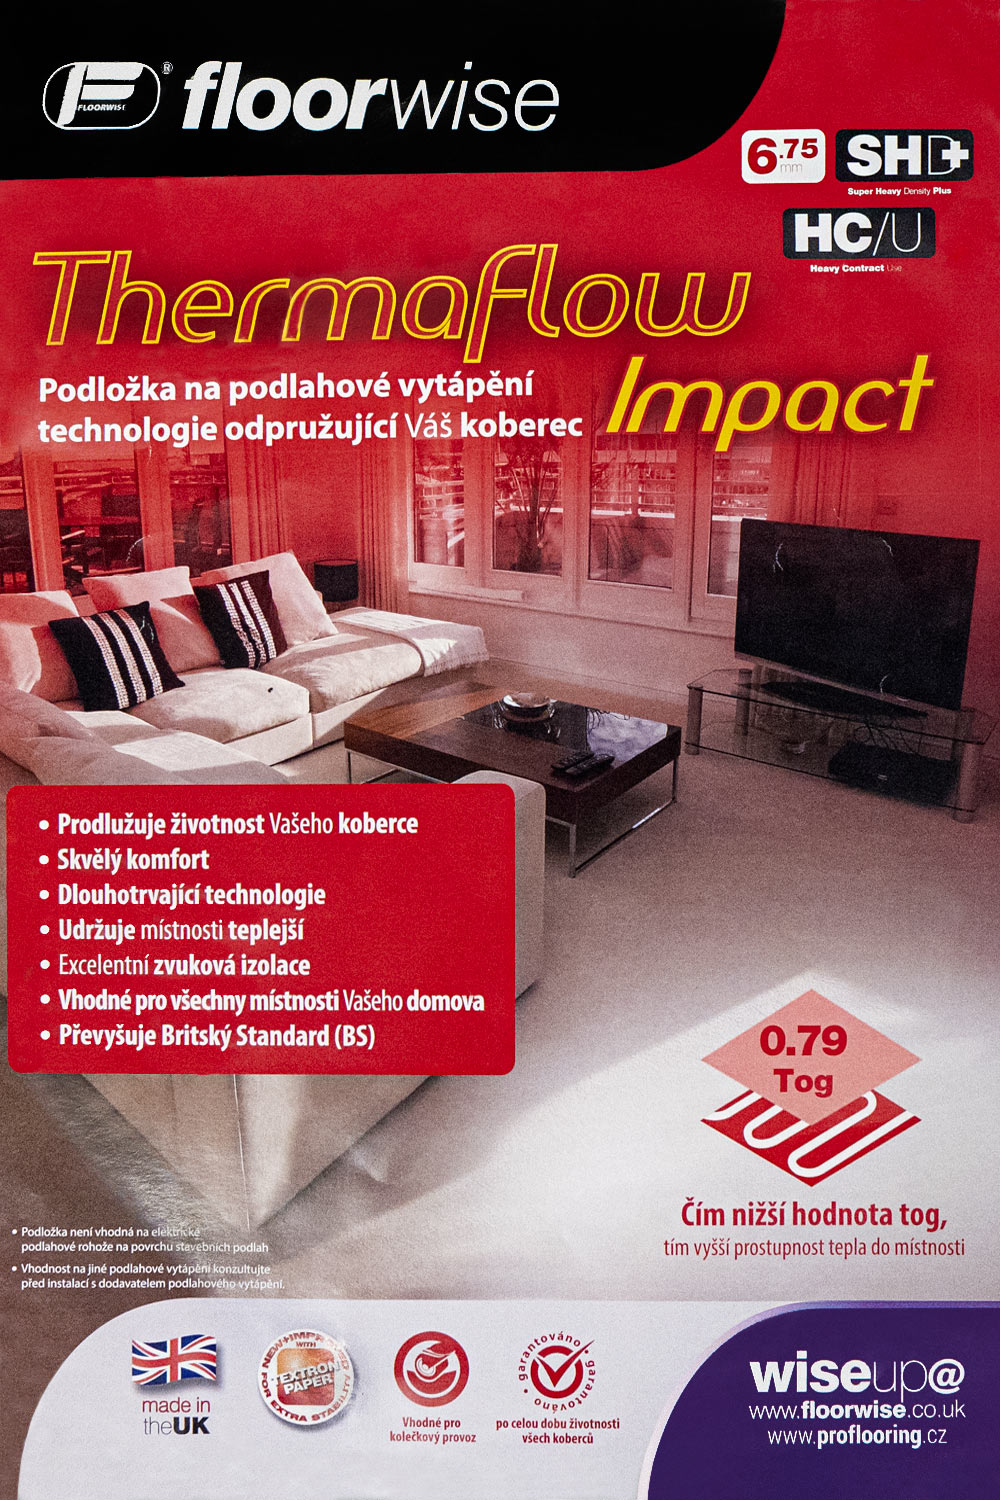 Podložka pod koberec Floorwise THERMAFLOW IMPACT